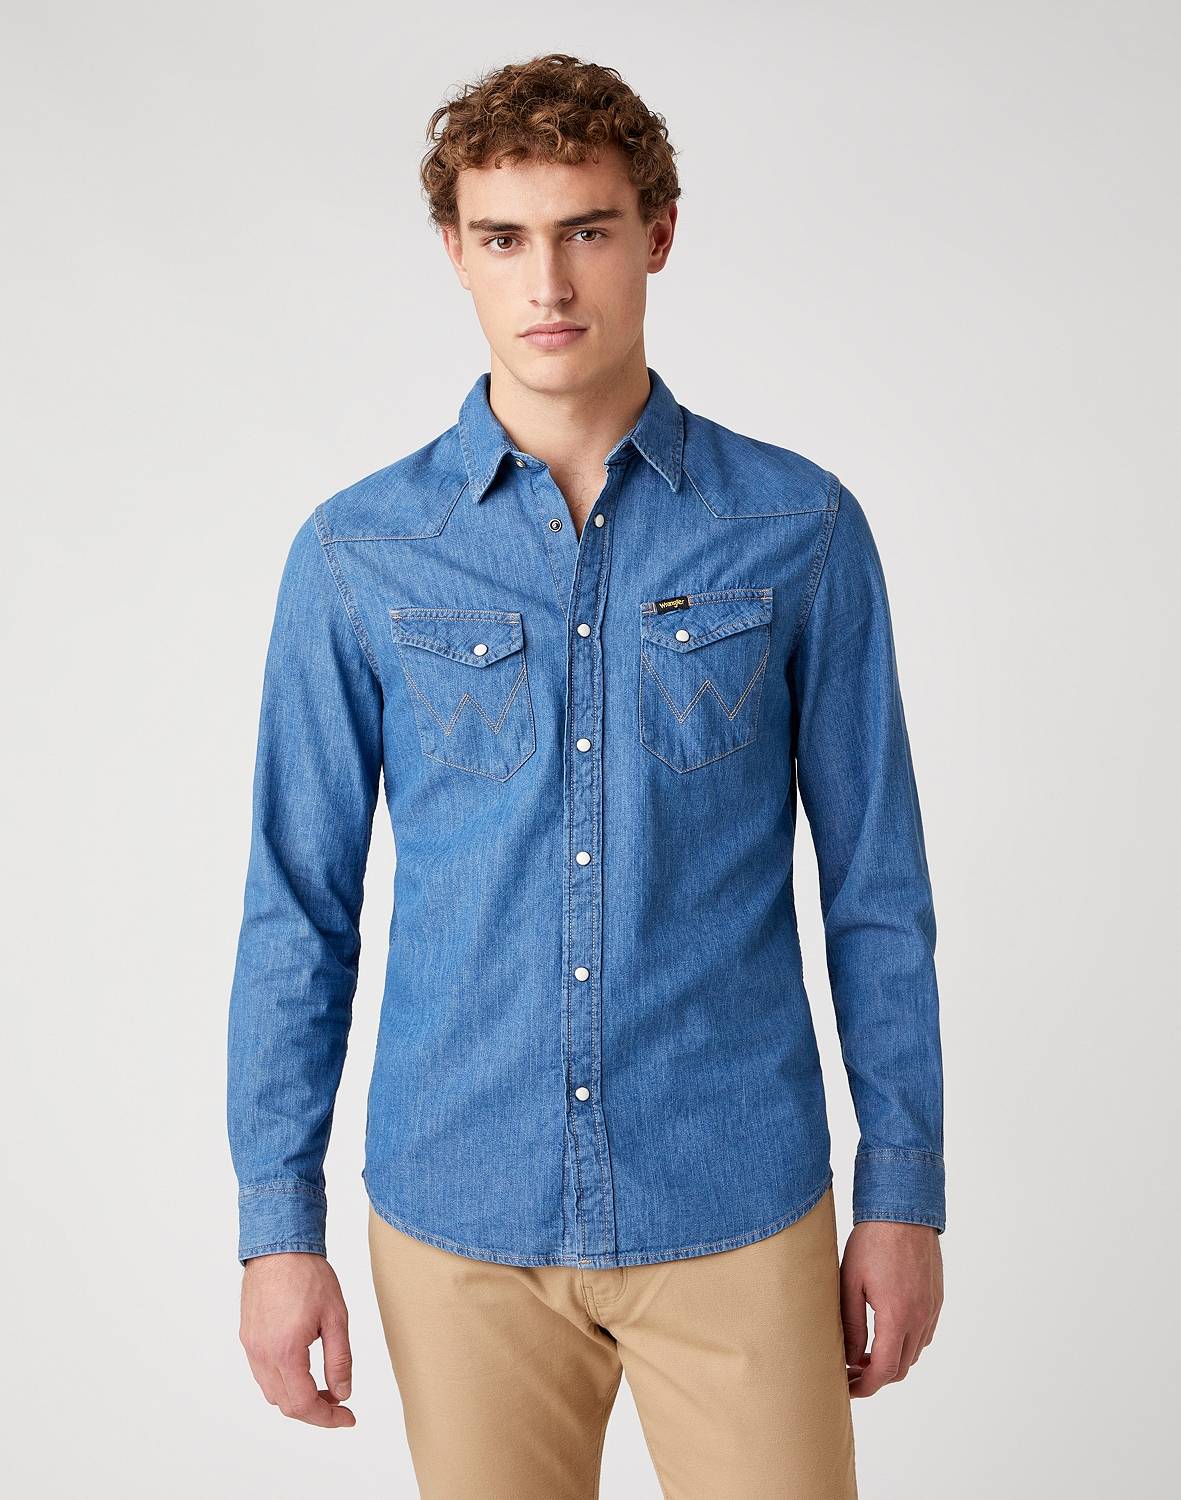 Джинсовая рубашка мужская Wrangler W5F25K14V синяя XL